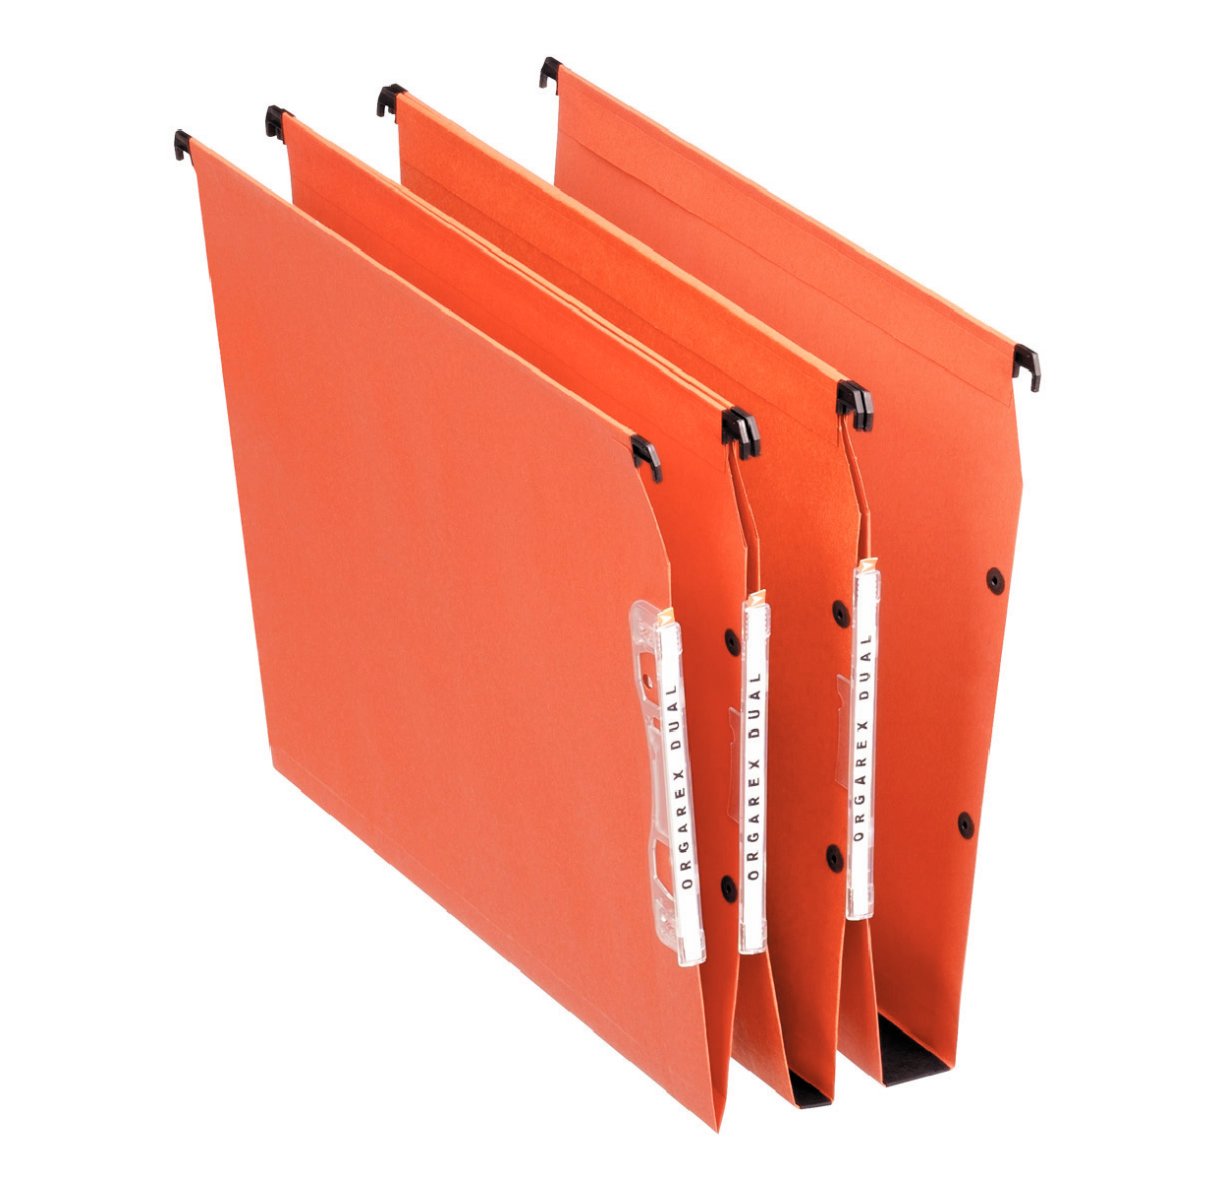 Esselte Orgarex Hängemappe Kraftpapier 220 g/m² rechteckiger Boden 30 mm Kapazität 330 mm breit 25 Stück orange